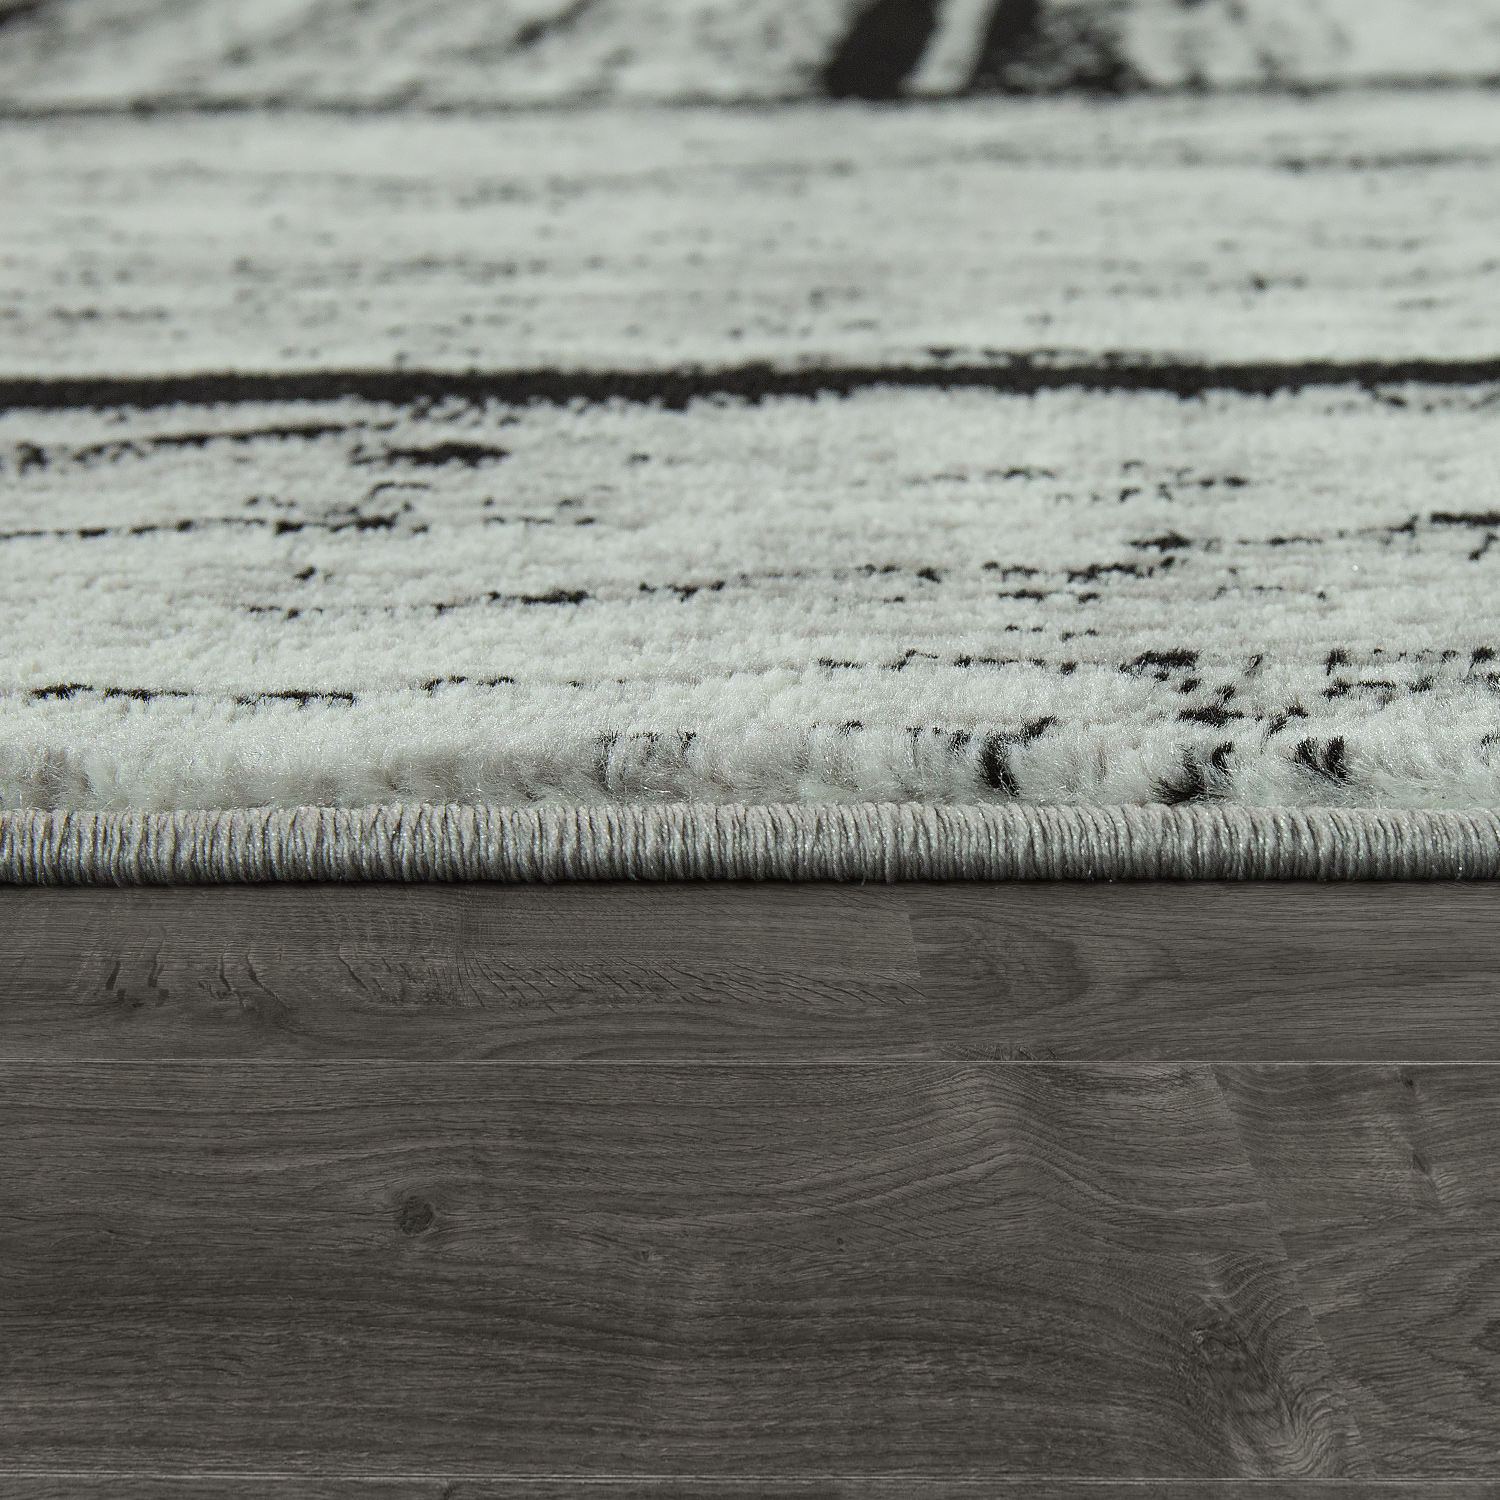 Wohnzimmer Teppich Kurzflor Holz Muster Grau Grau Modern